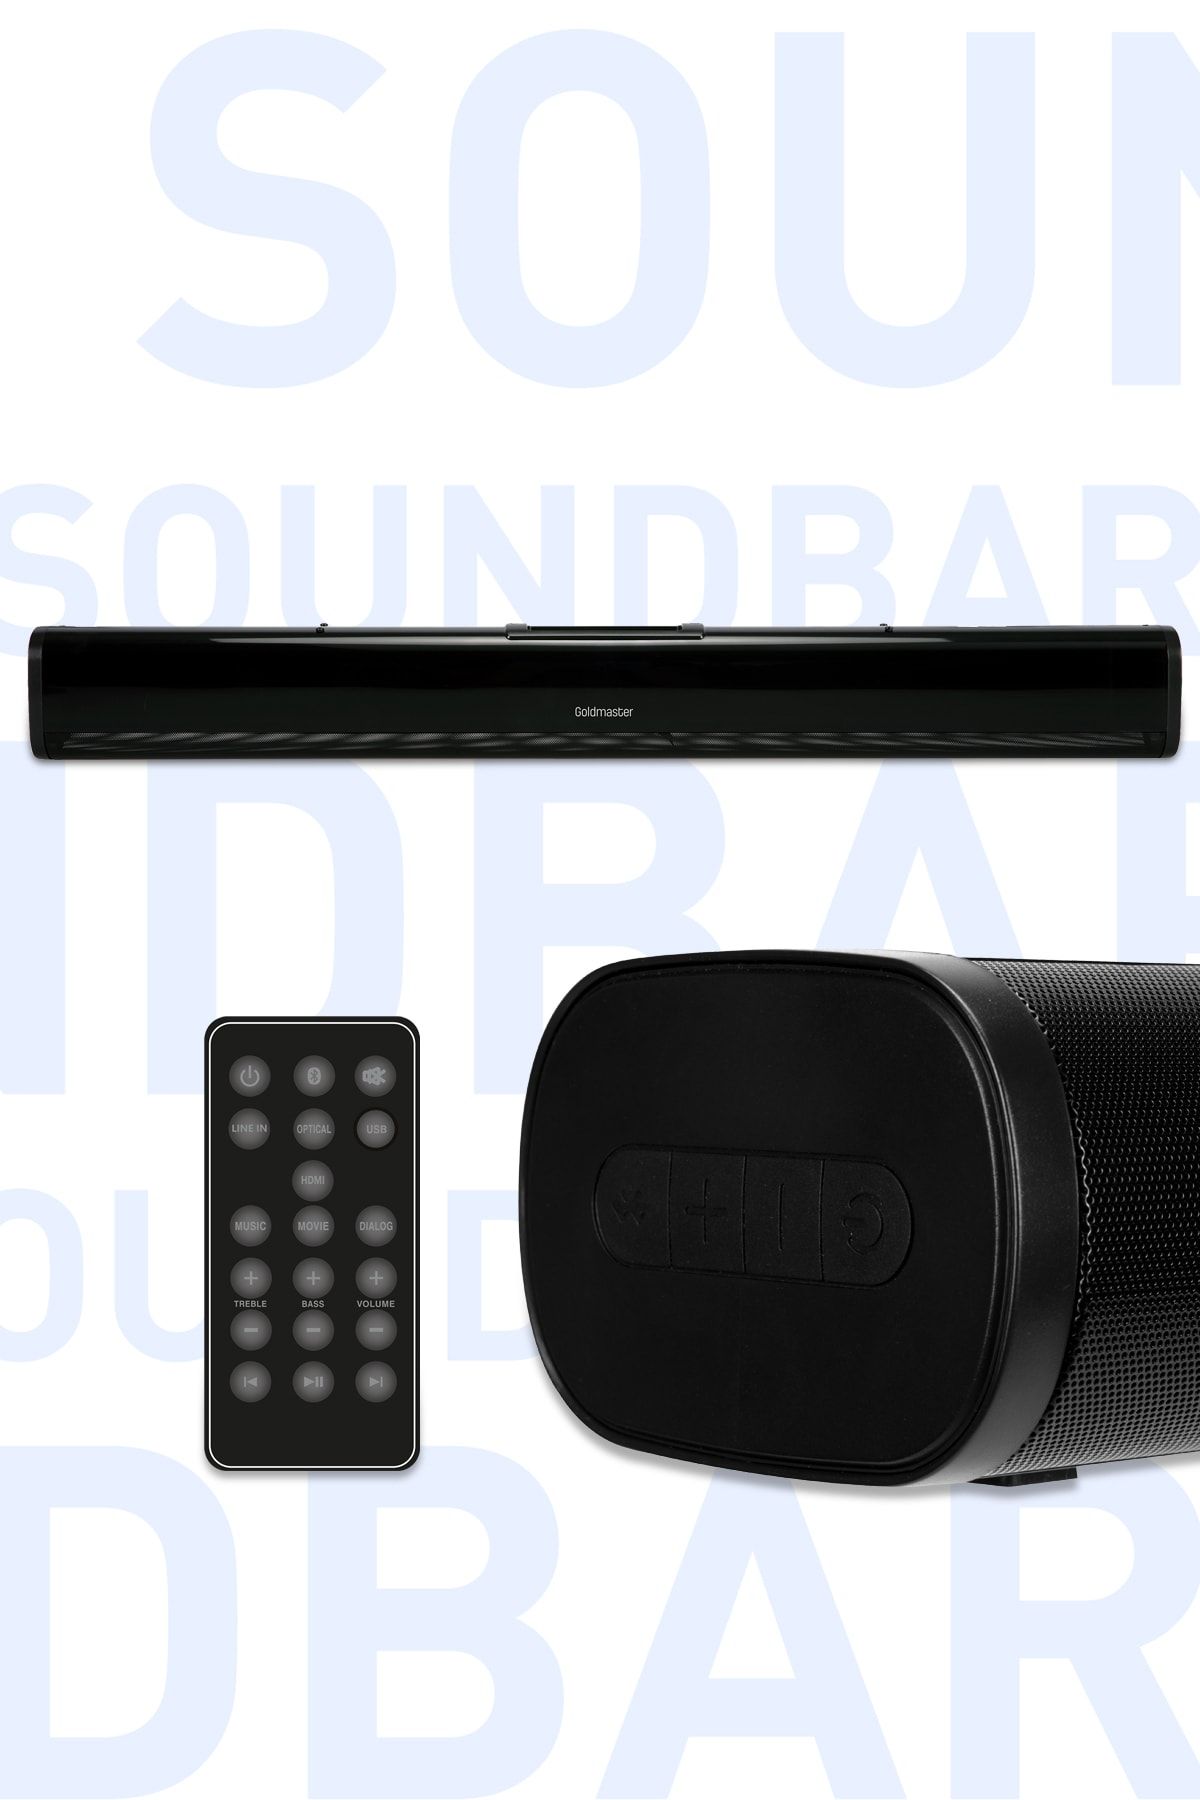 GoldMaster Soundbar Hdmı Ve Optik Girişli 40w Bluetooth 5.0 Uzaktan Kumandalı Ses Sistemi